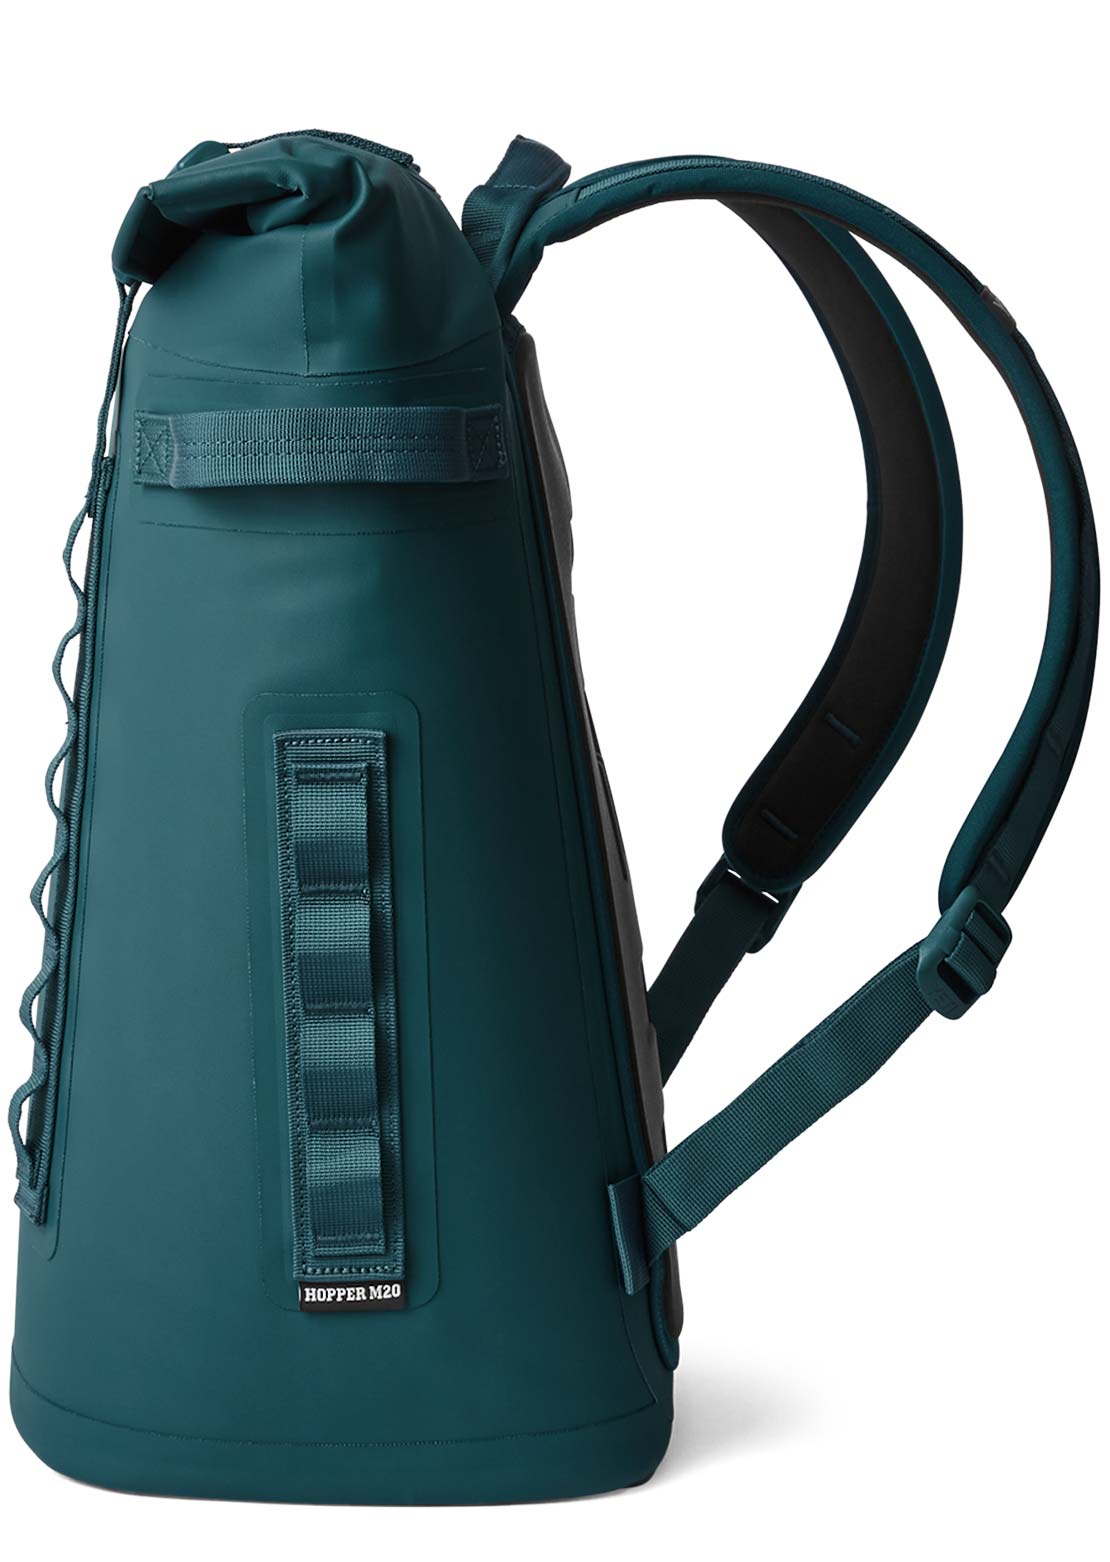 YETI Hopper Backpack M20 Soft Cooler Agave Teal